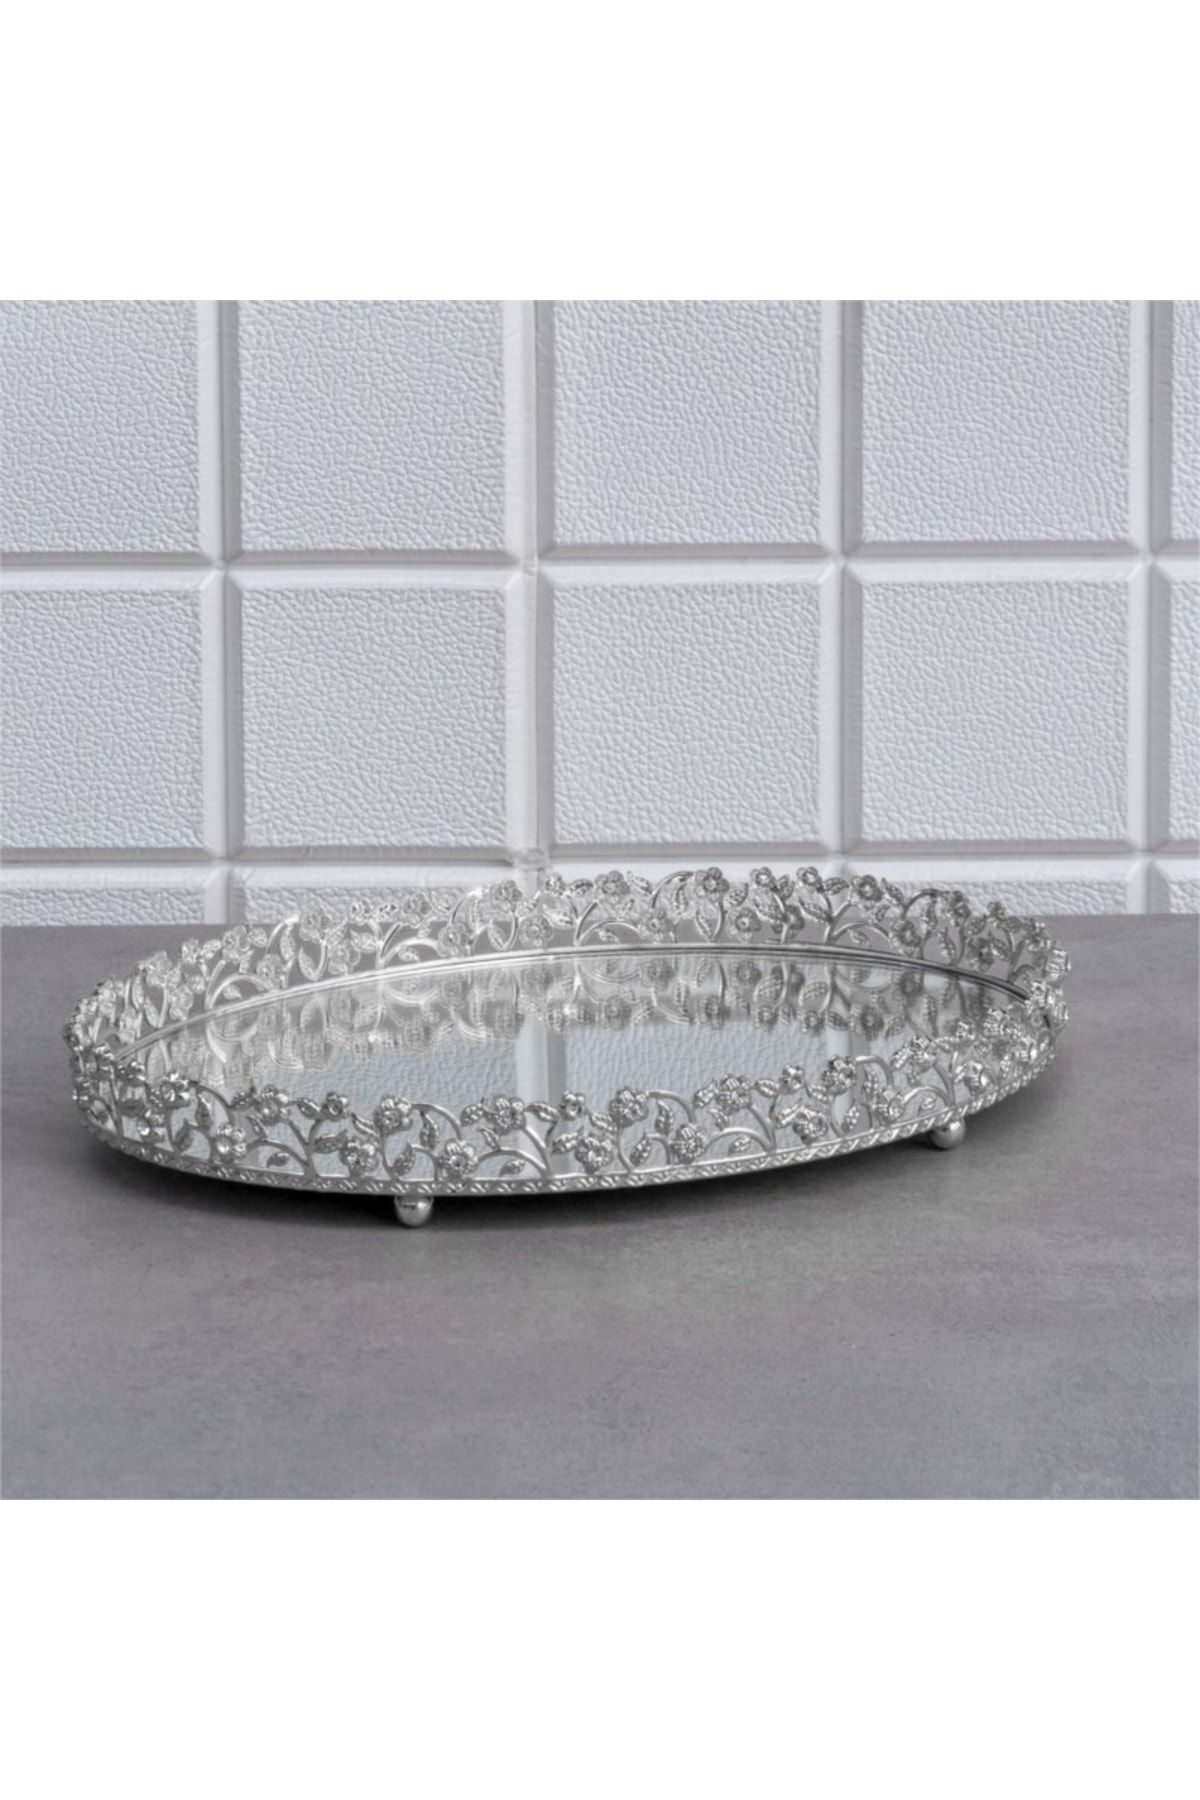 Zeyve Elmas Oval Jardinyer Taşlı Tepsi Aynalı Metal Kulpsuz Orta Sunumluk Gümüş